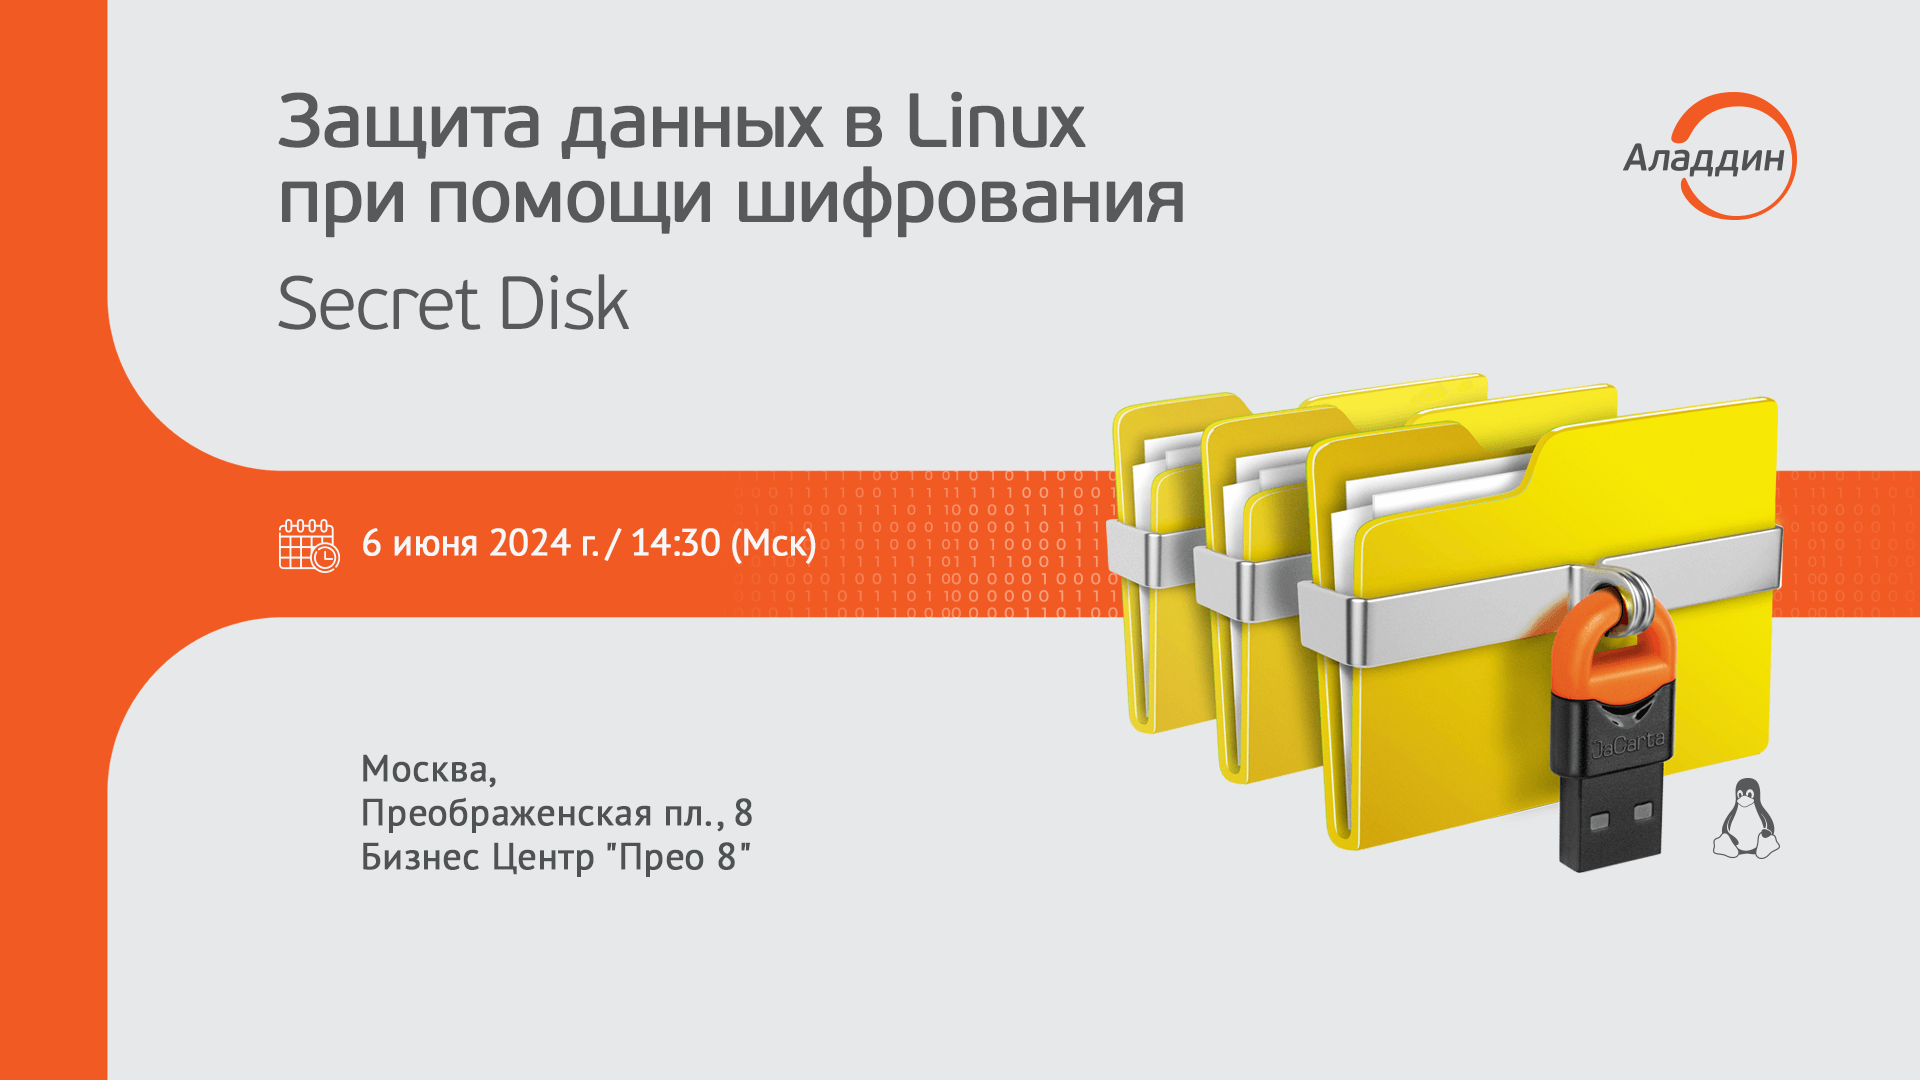 Компания Аладдин проведет 6 июня встречу с заказчиками, посвященную выпуску новой версии Secret Disk для Linux